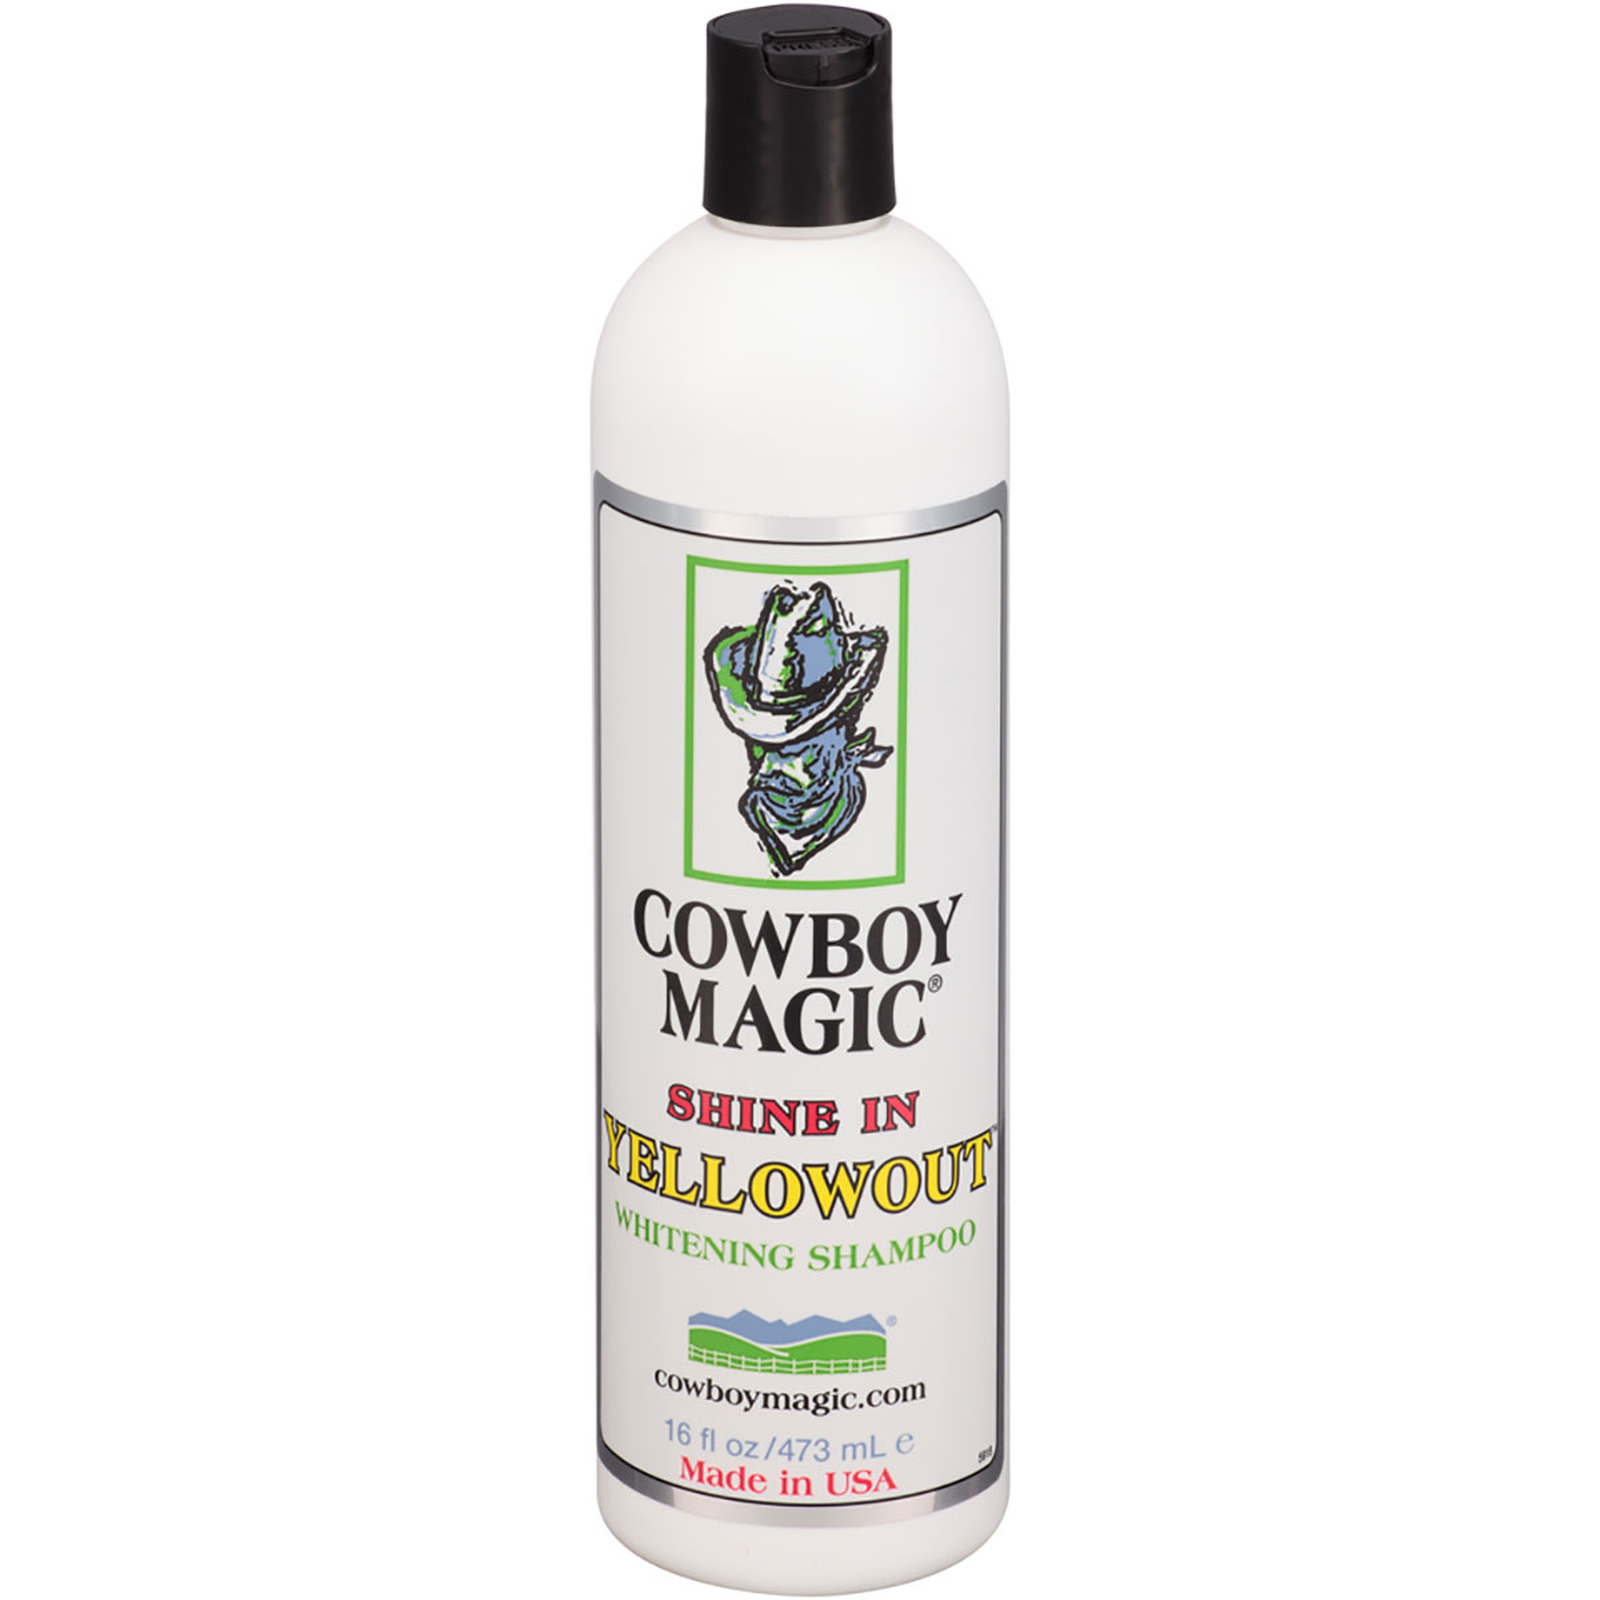 Cowboy Magic Shine In Yellowout Whitening Shampoo